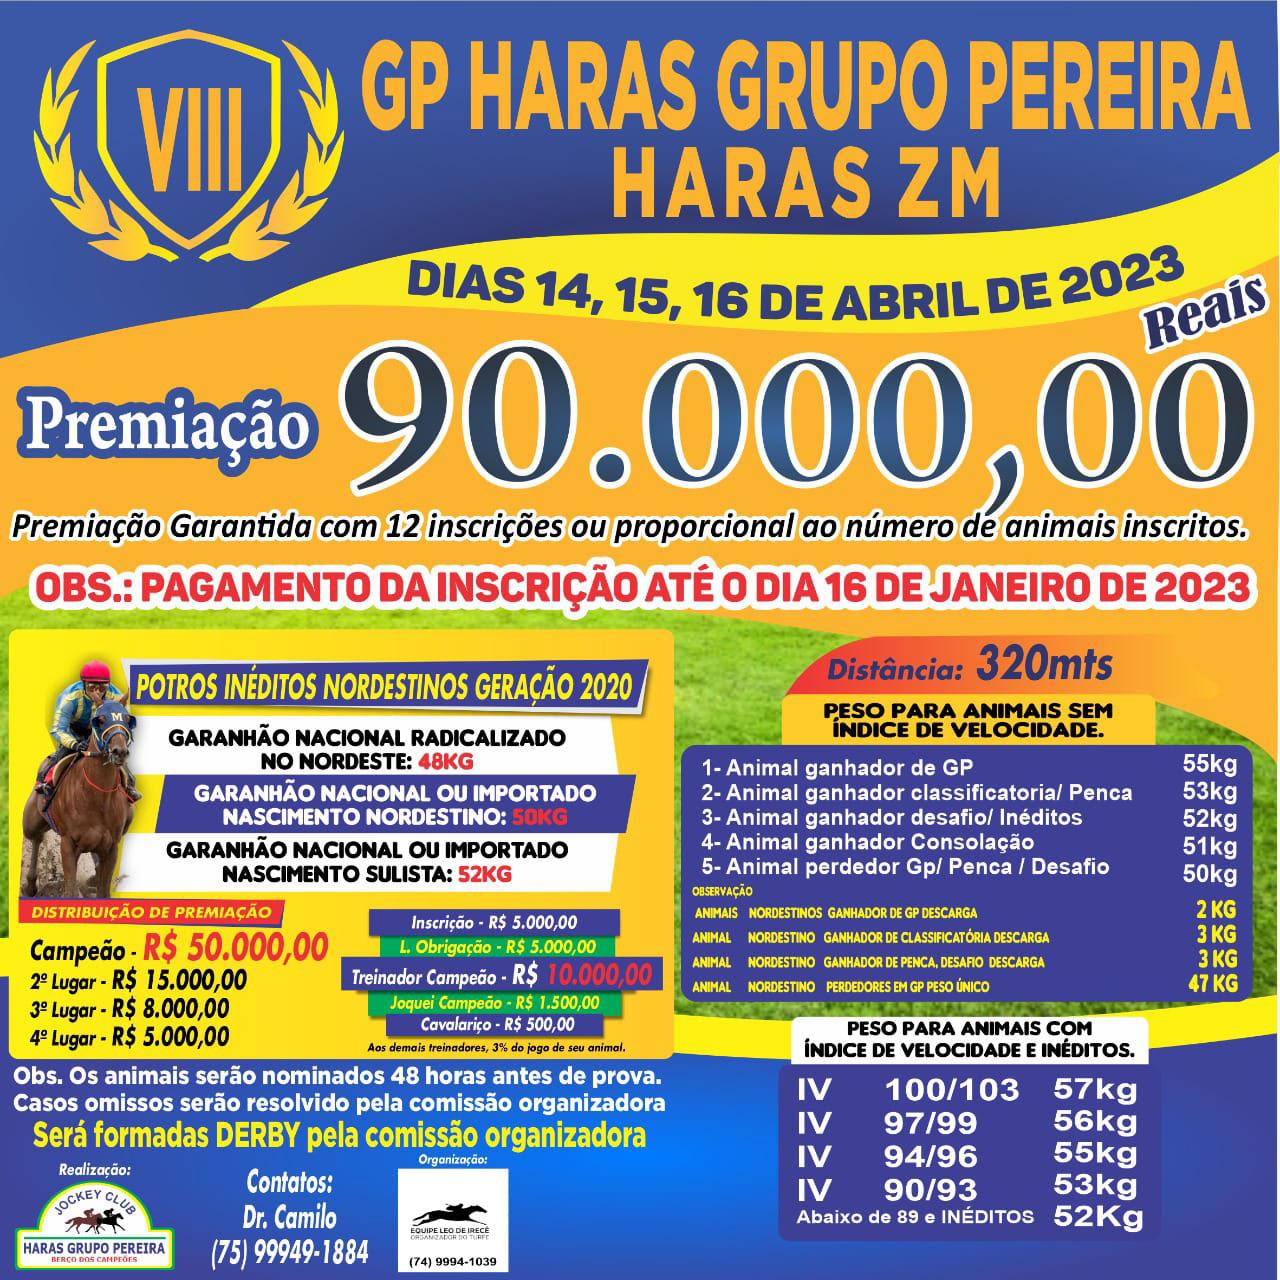 GP Haras Grupo Pereira Haras ZM